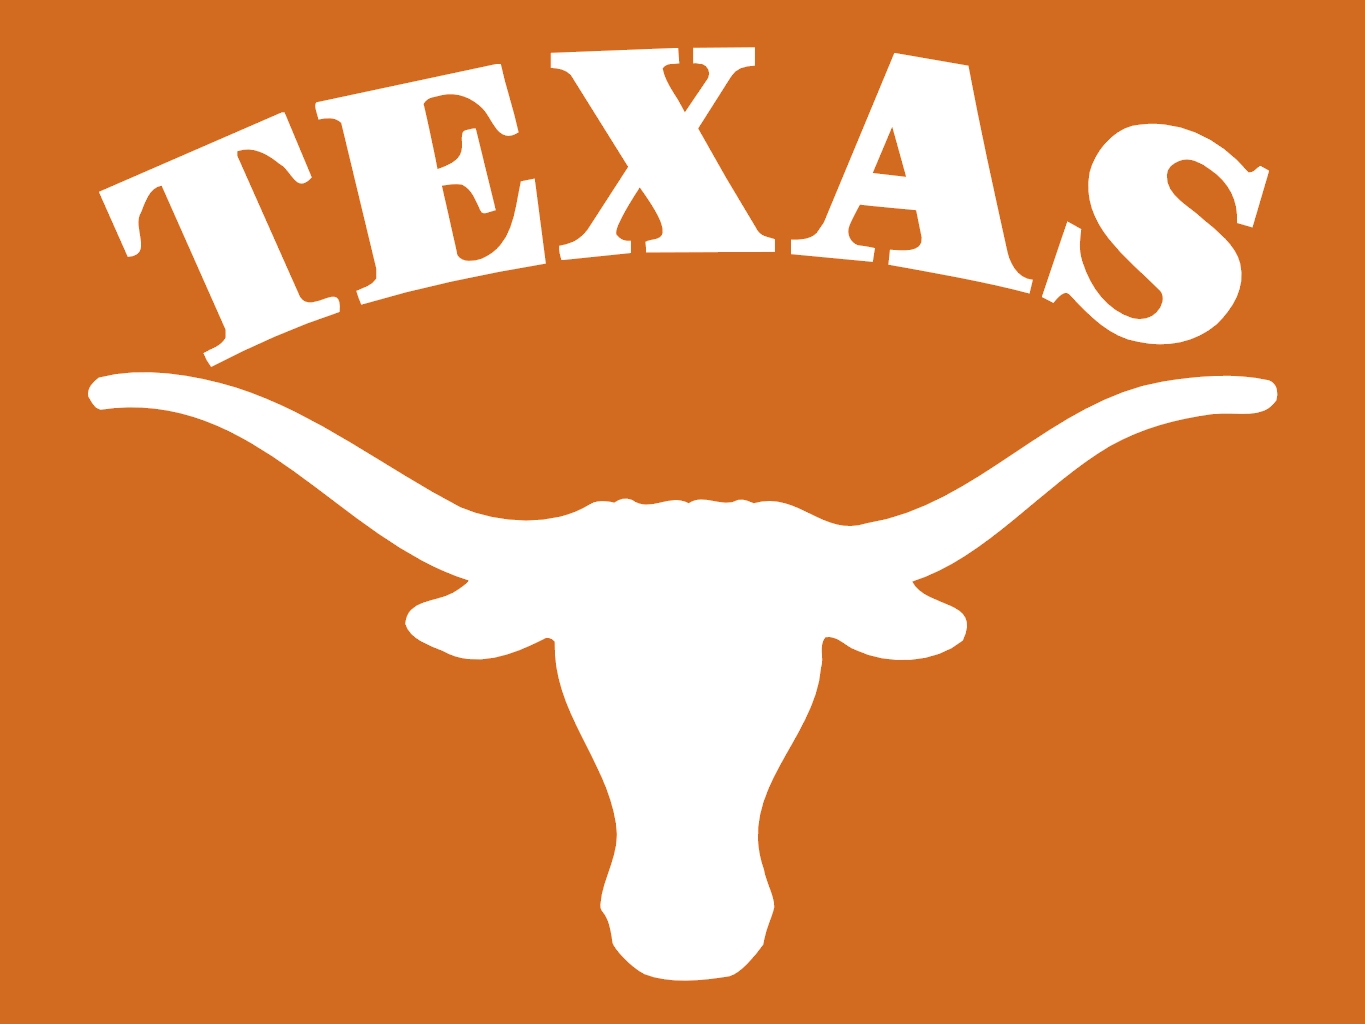 Texas Longhorns Logo N4 free image download